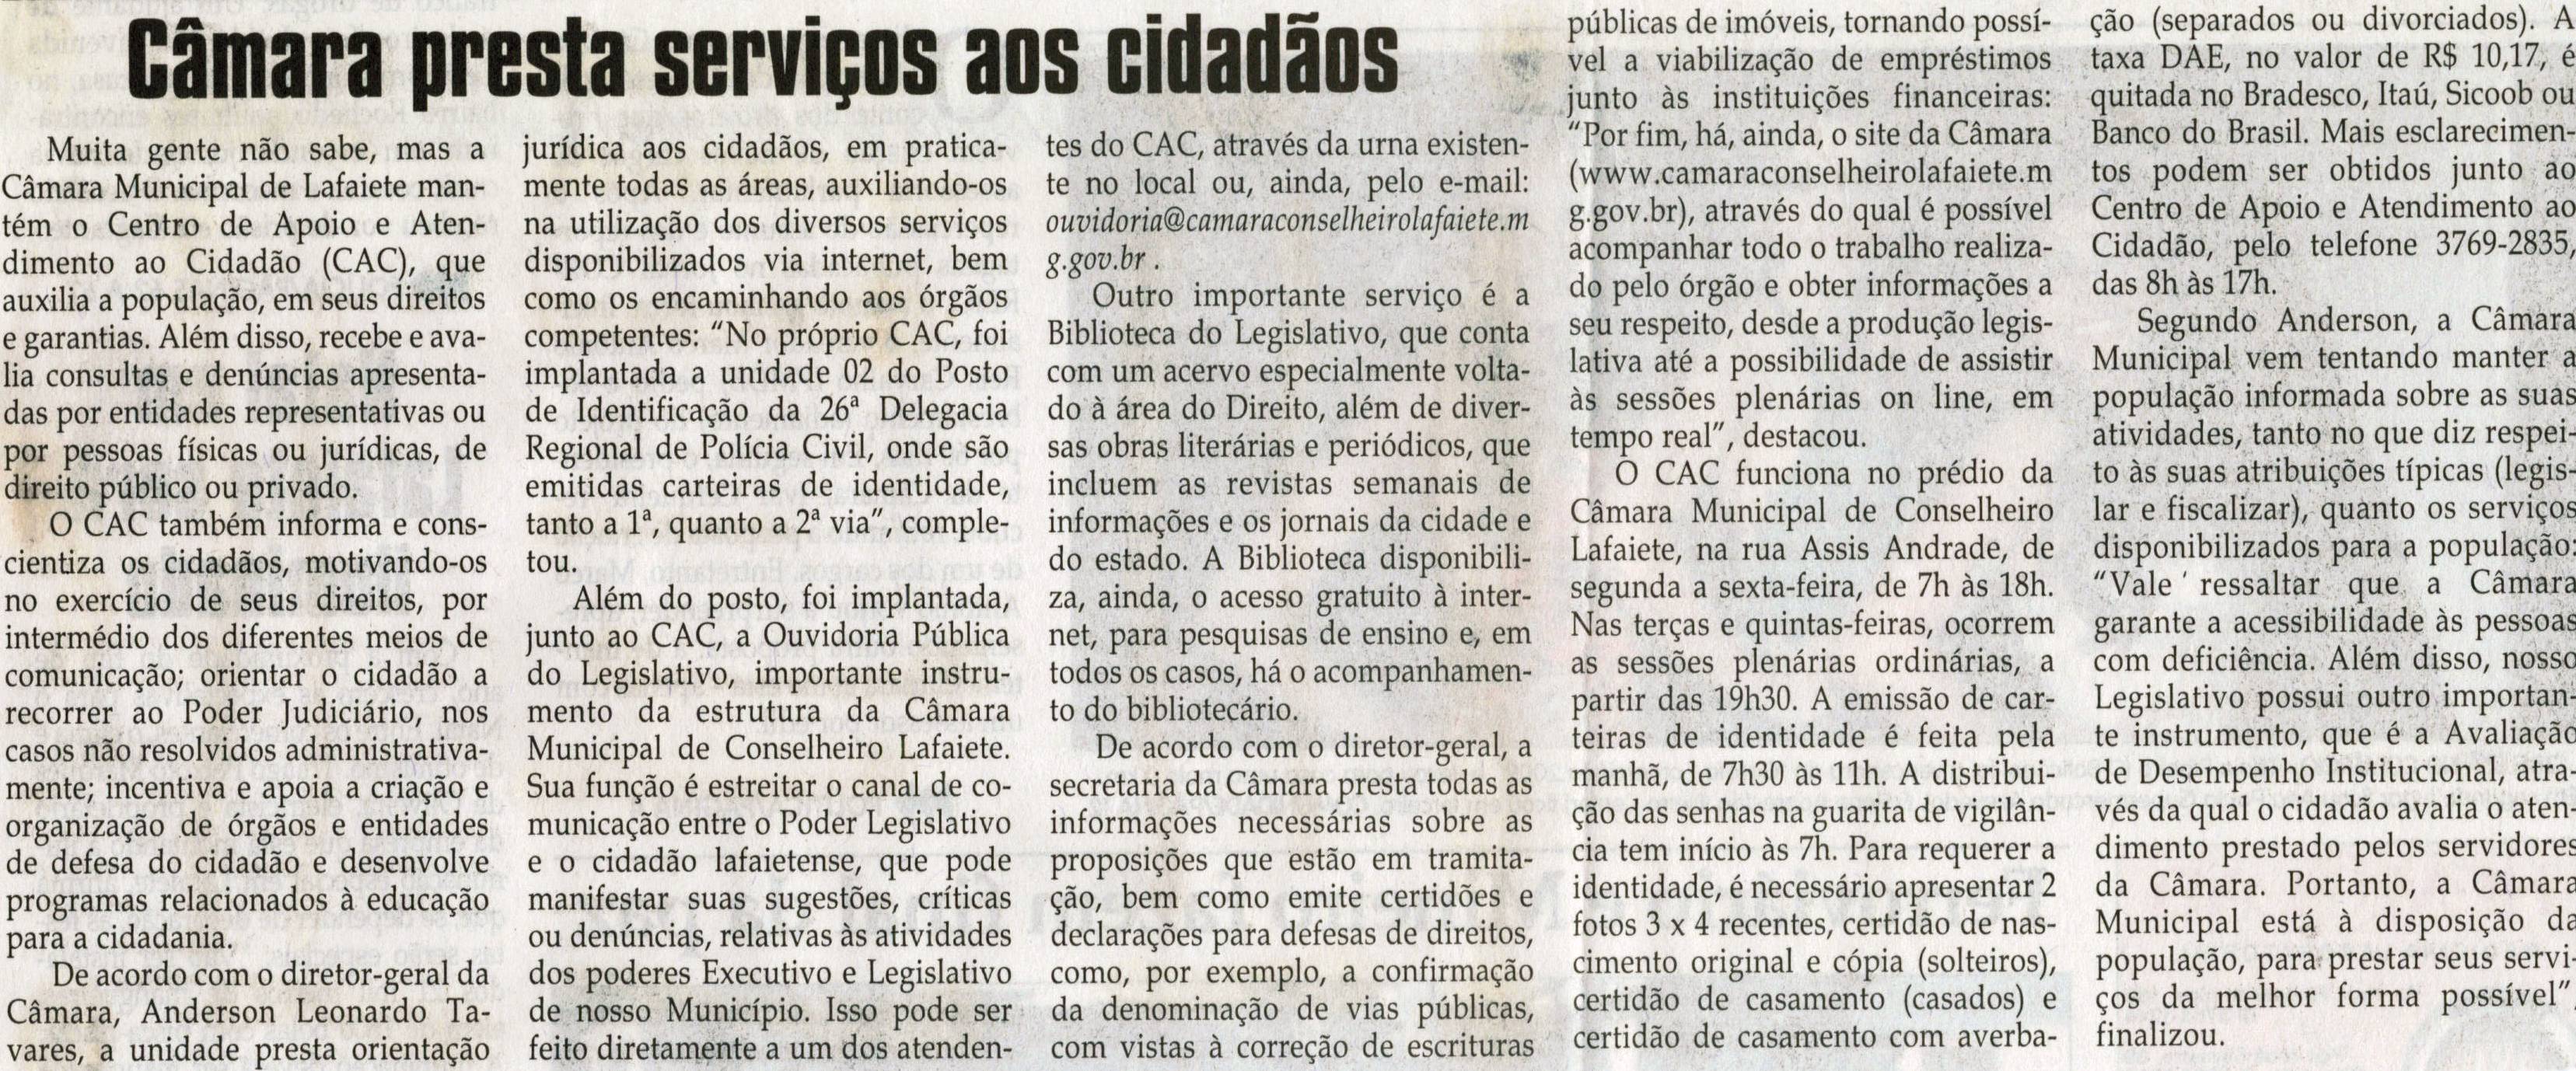 Câmara presta serviços aos cidadãos. Jornal Correio da Cidade, Conselheiro Lafaiete, 07 nov. 2009, p. 02.